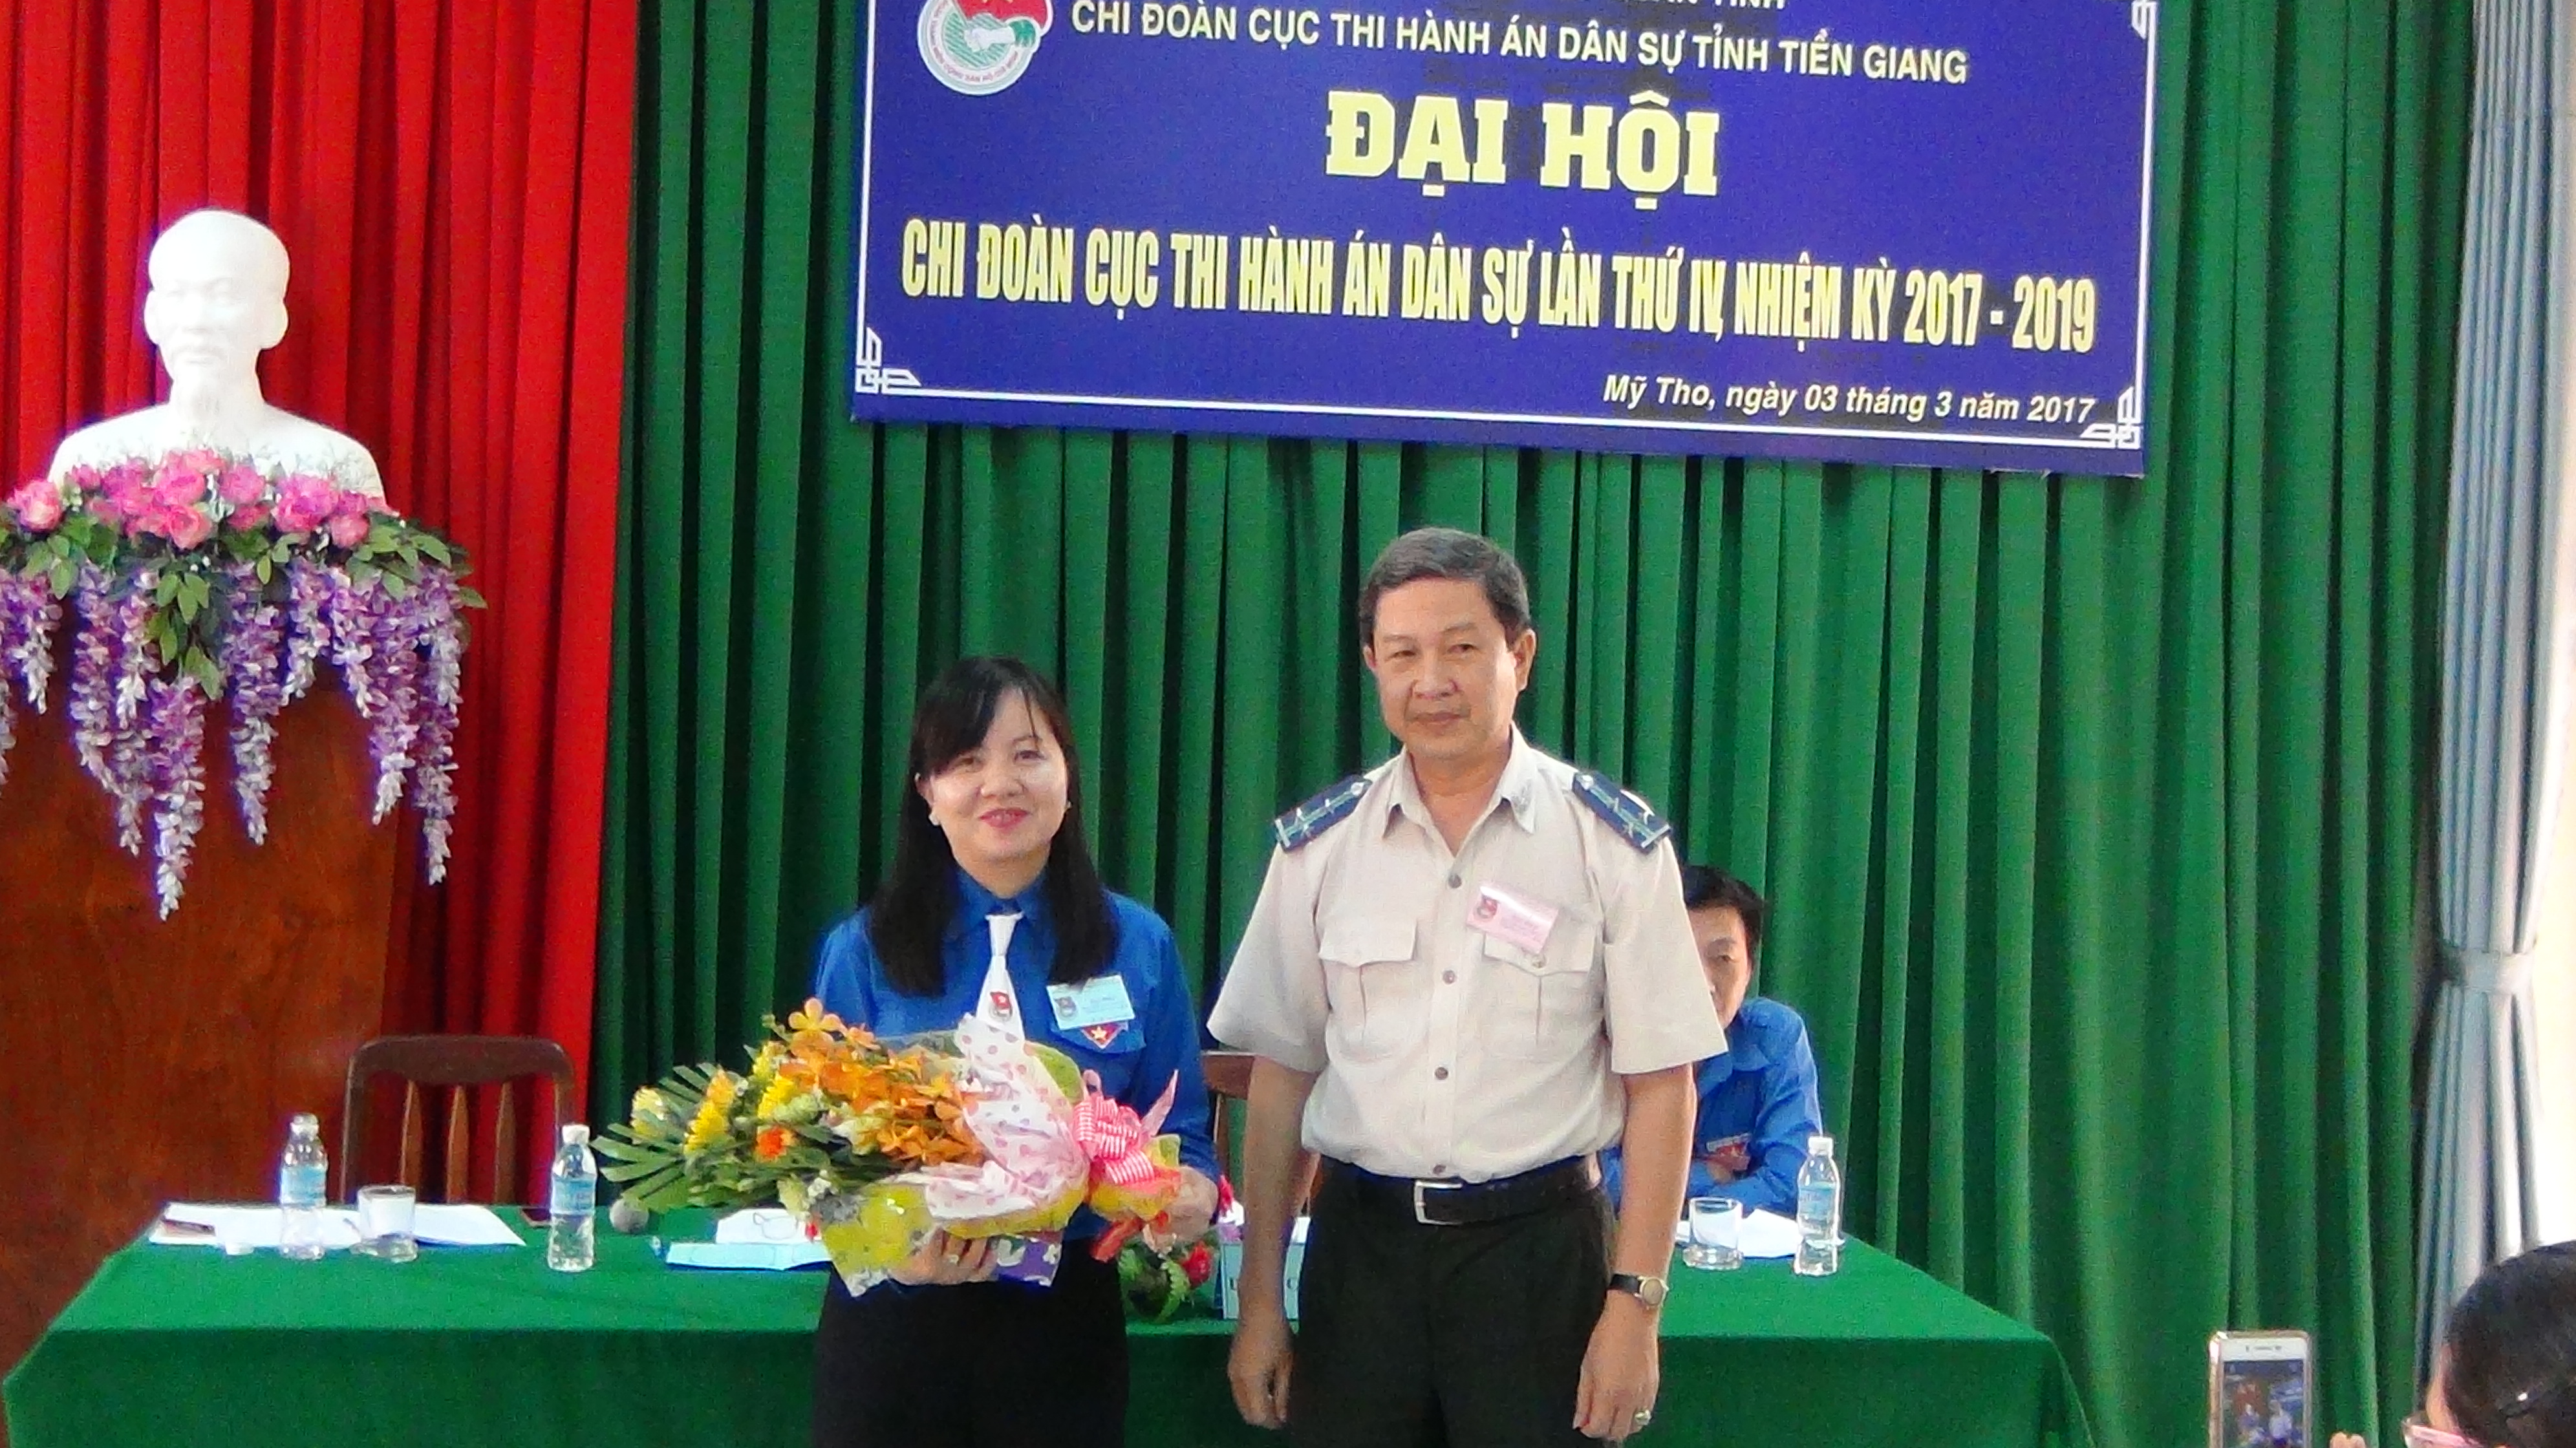 Đại hội Chi đoàn Cục Thi hành án dân sự tỉnh Tiền Giang lần thứ IV nhiệm kỳ 2017 – 2019